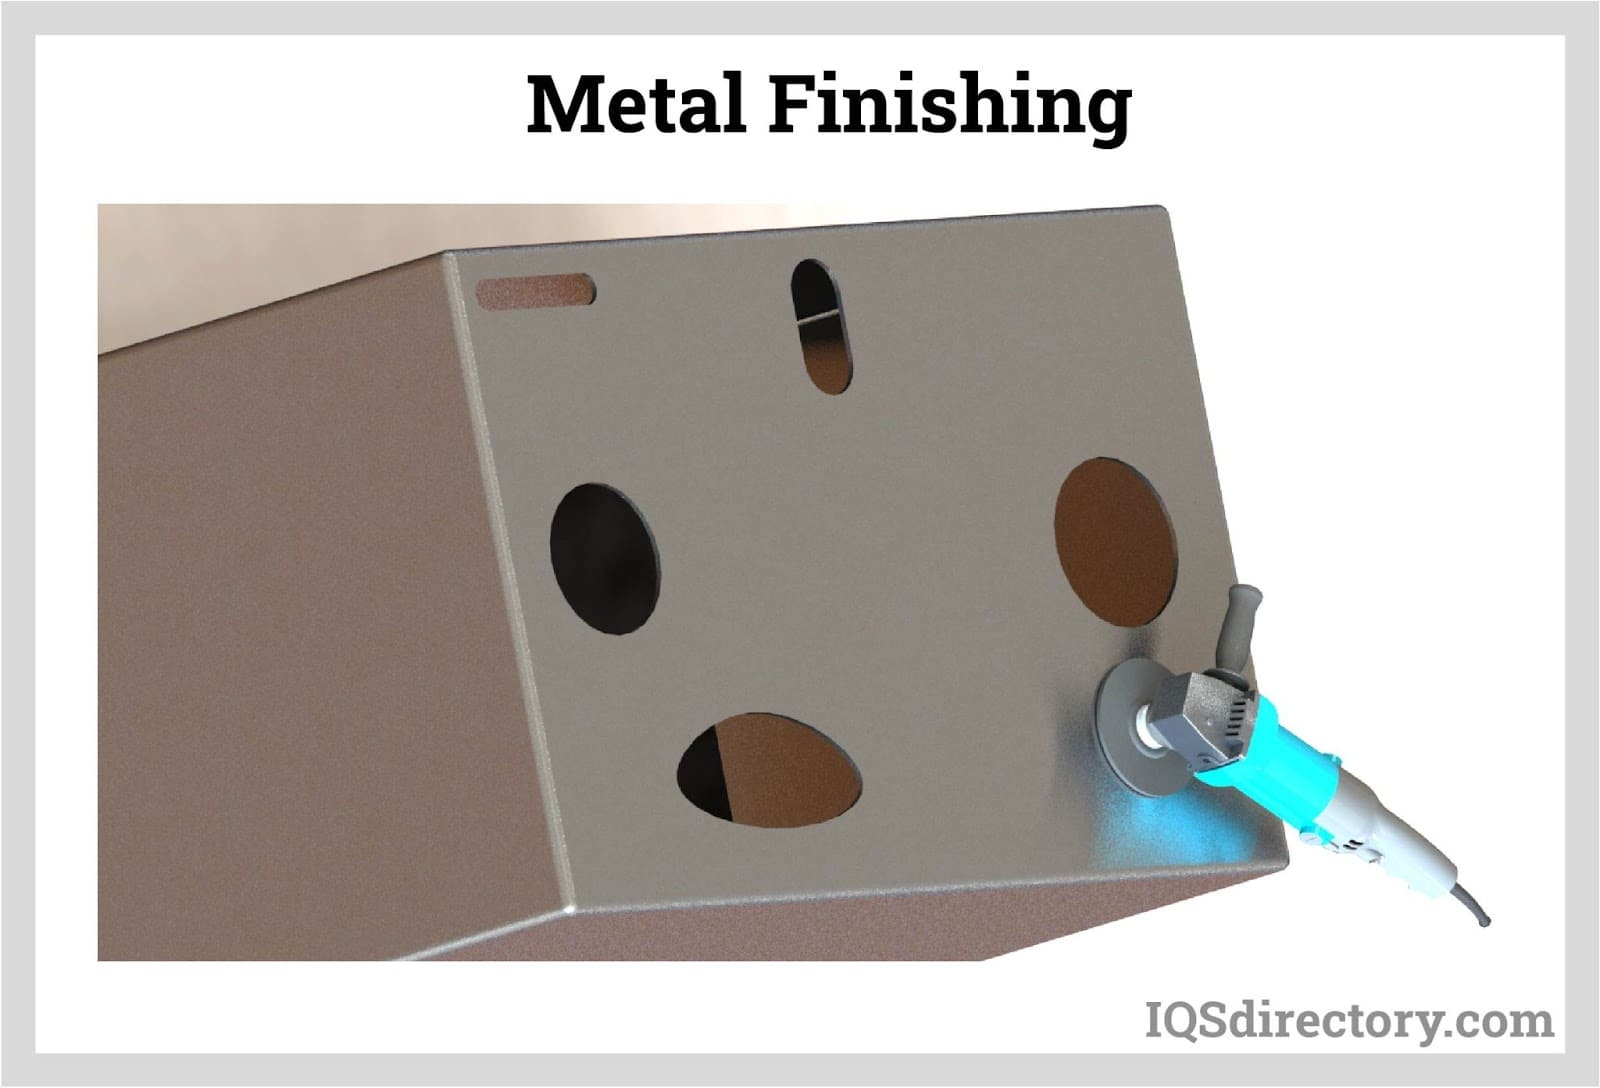 Types of Metal Finishing